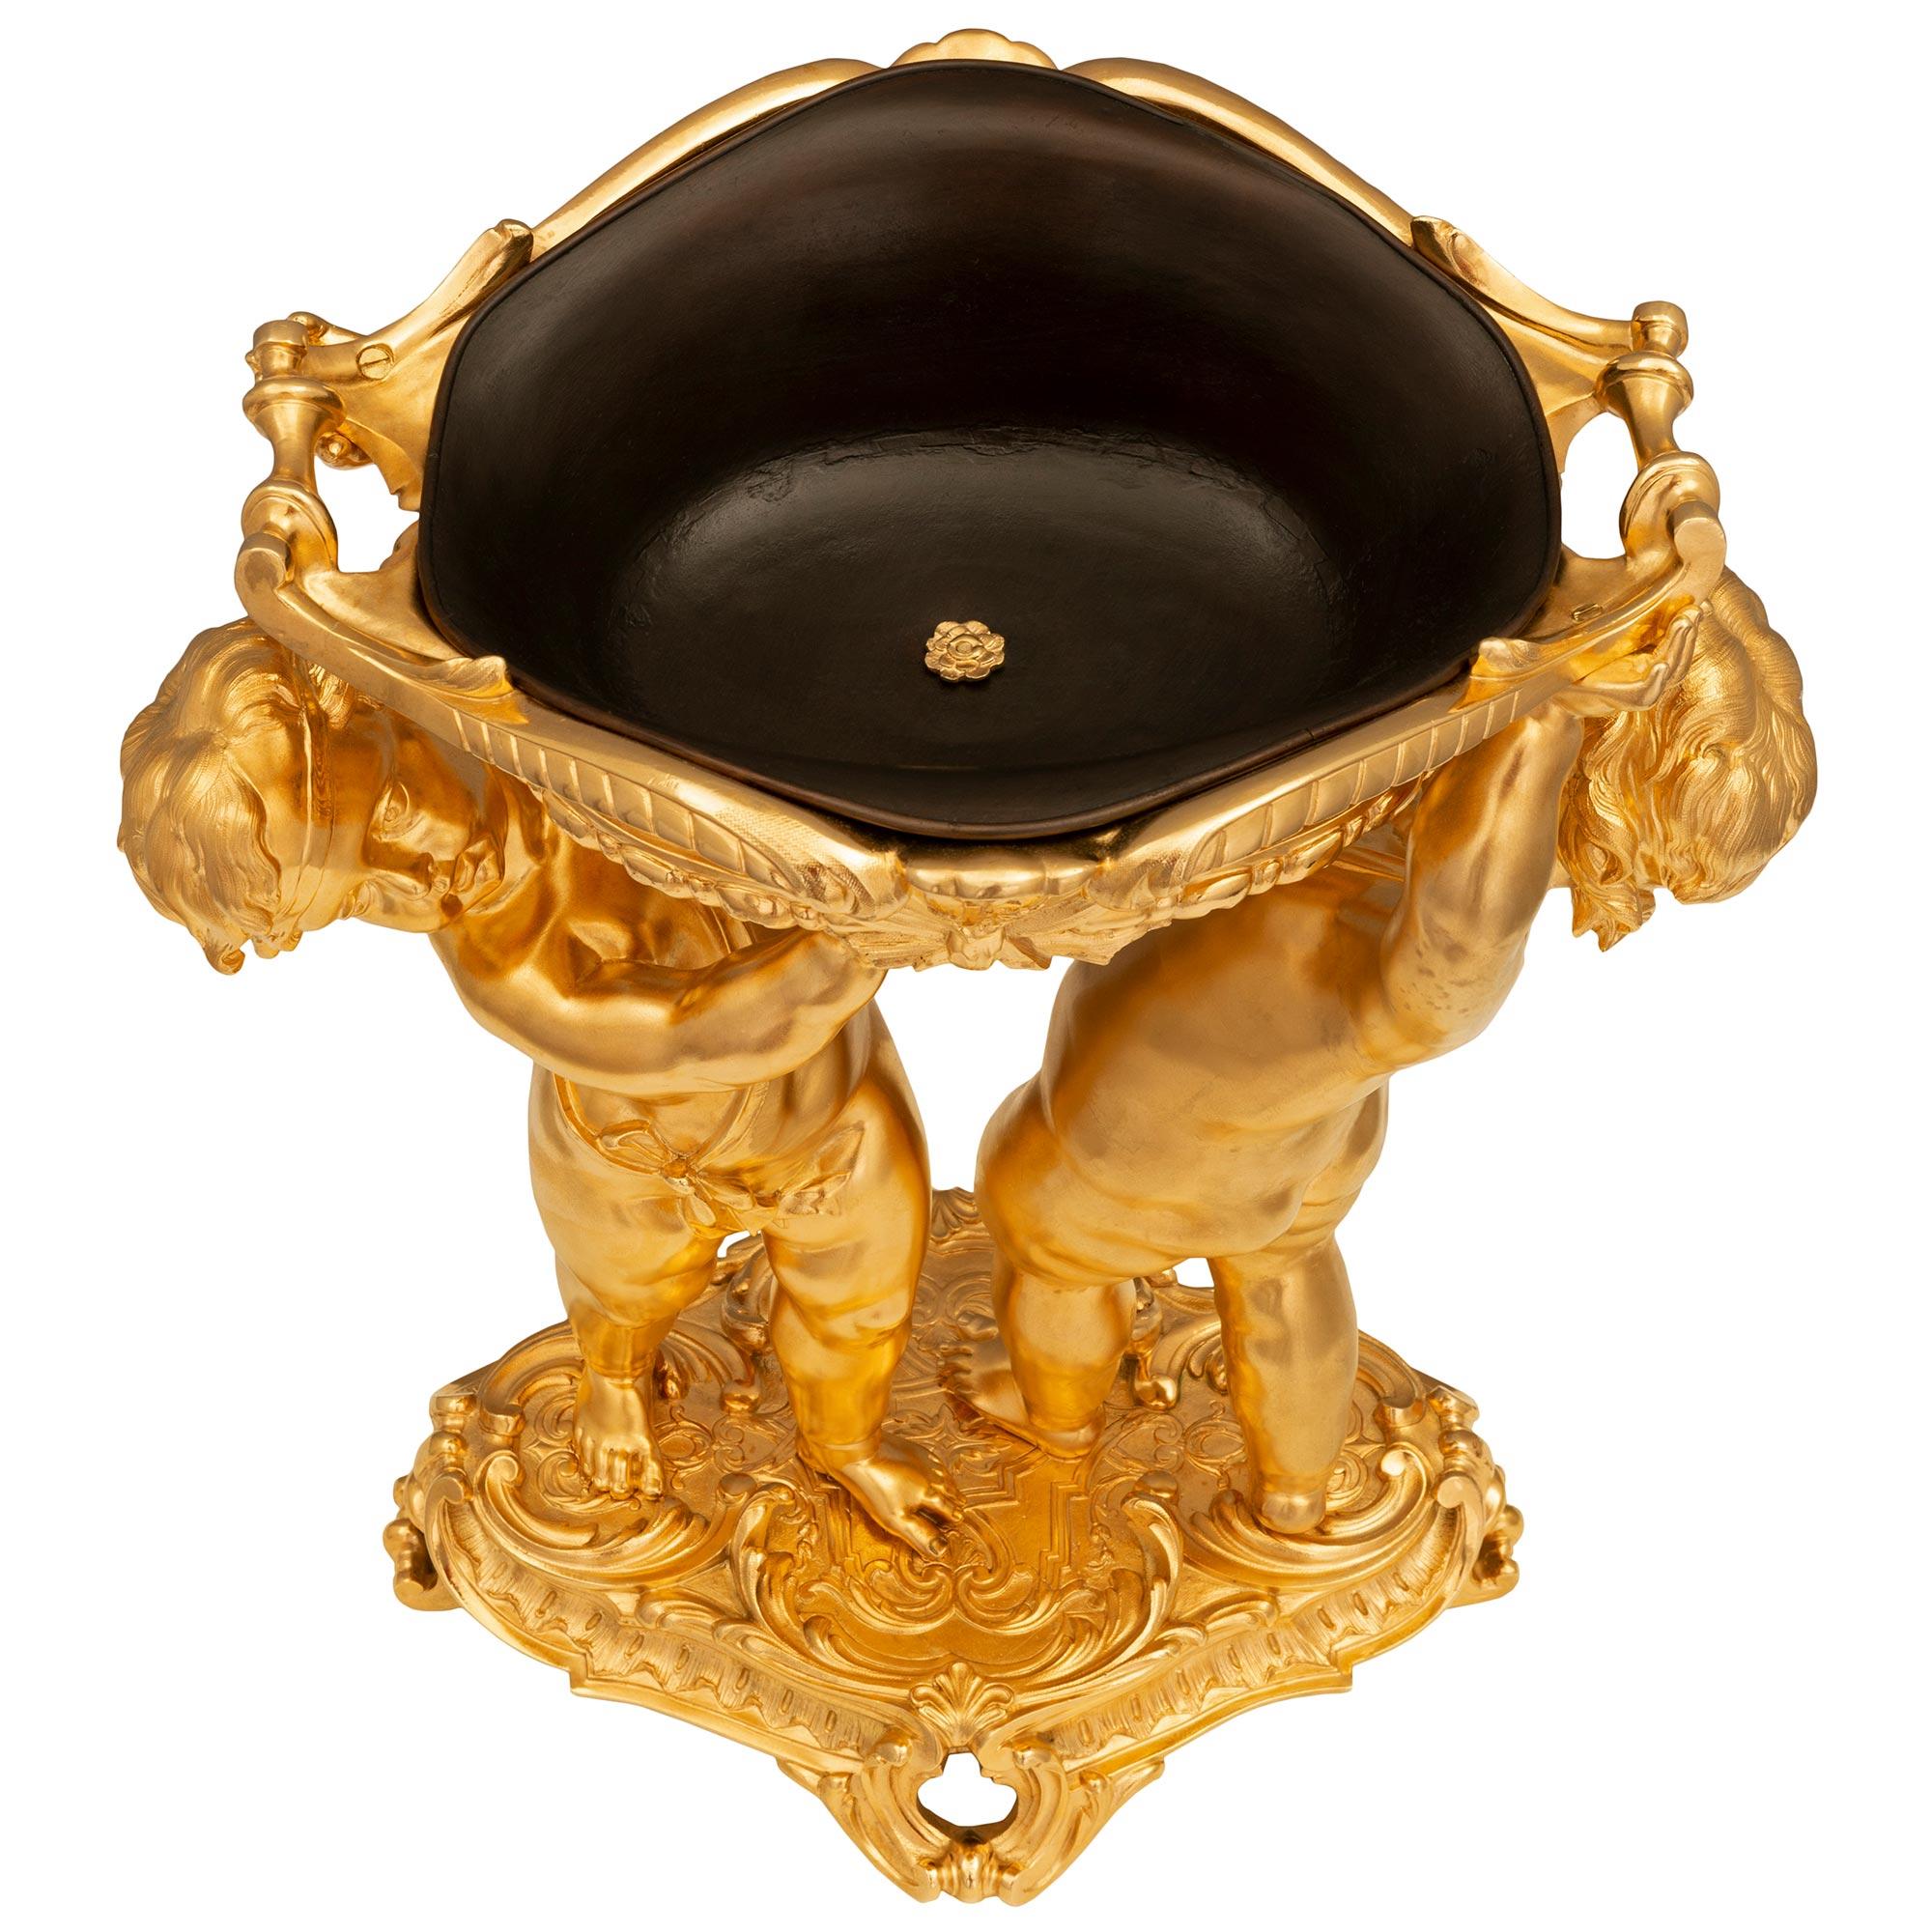 Eine atemberaubende und extrem hohe Qualität Französisch 19. Jahrhundert Louis XVI st. Belle Époque Zeitraum Ormolu und patiniert Bronze Tafelaufsatz. Das Mittelstück wird von einem eleganten, durchbrochenen, länglichen Sockel mit auffälligen